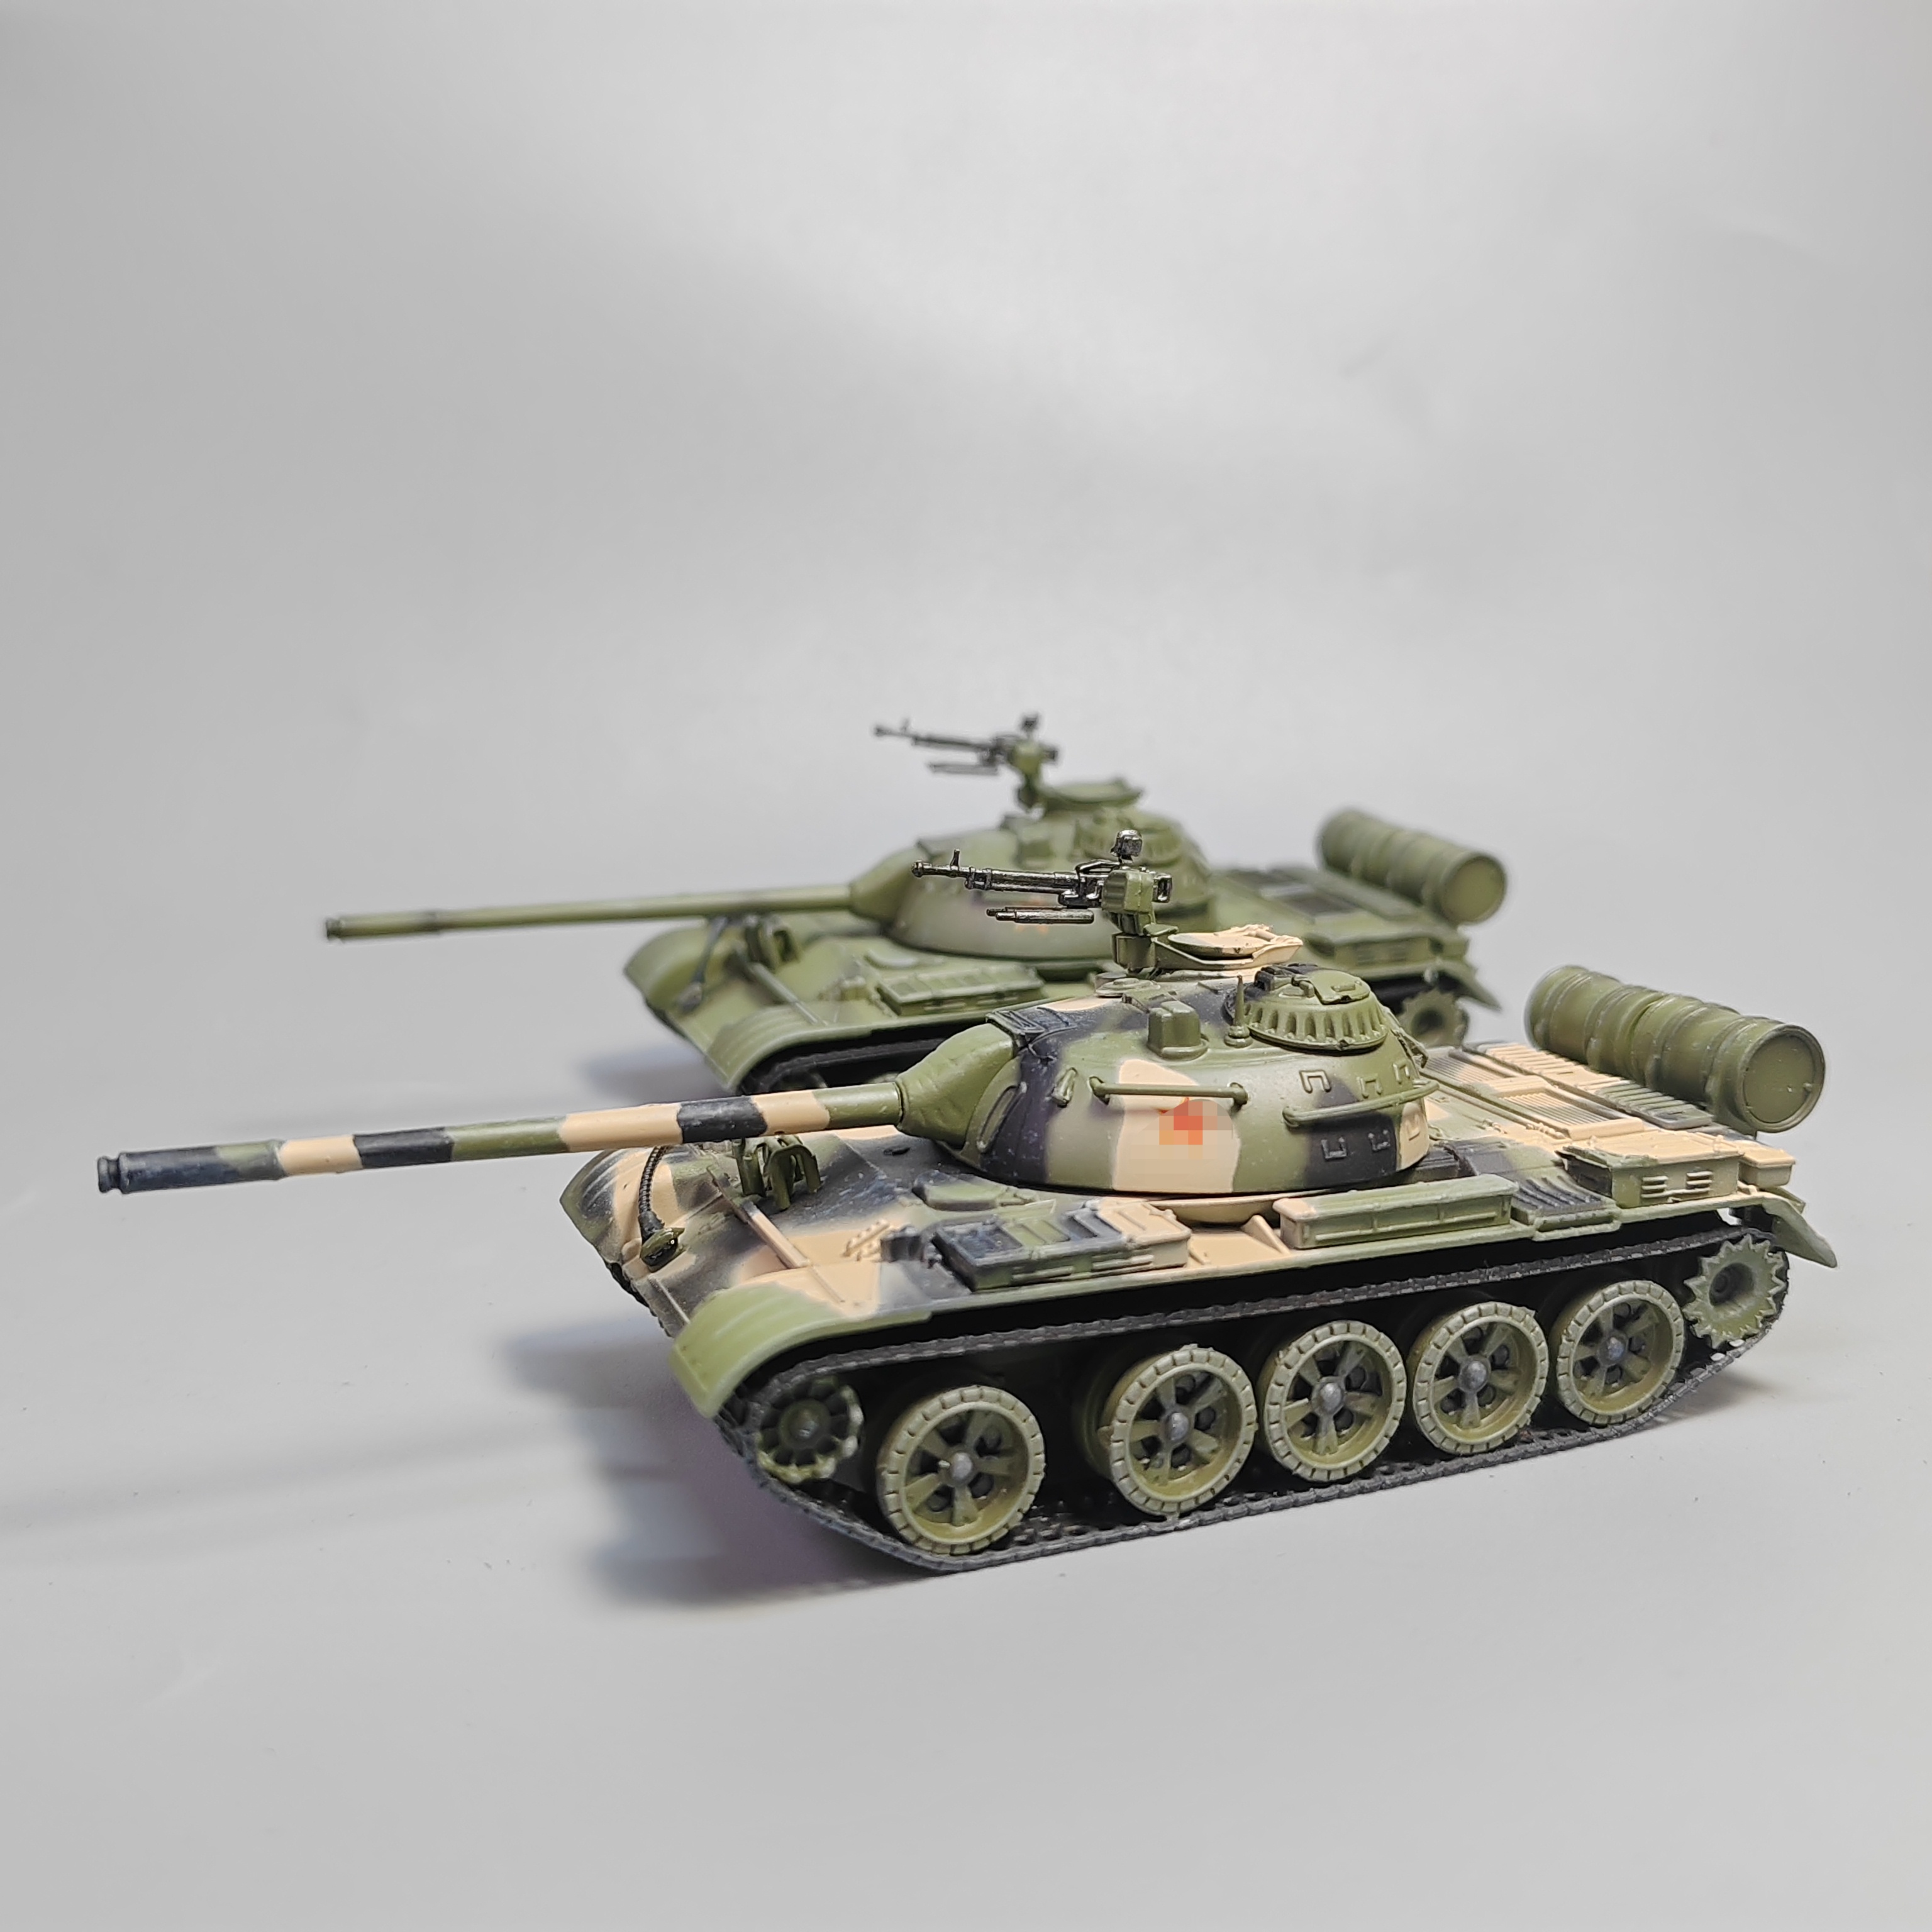 1/72中国59式主战坦克模型合金仿真军事玩具微缩艺术摄影道具礼物 - 图0